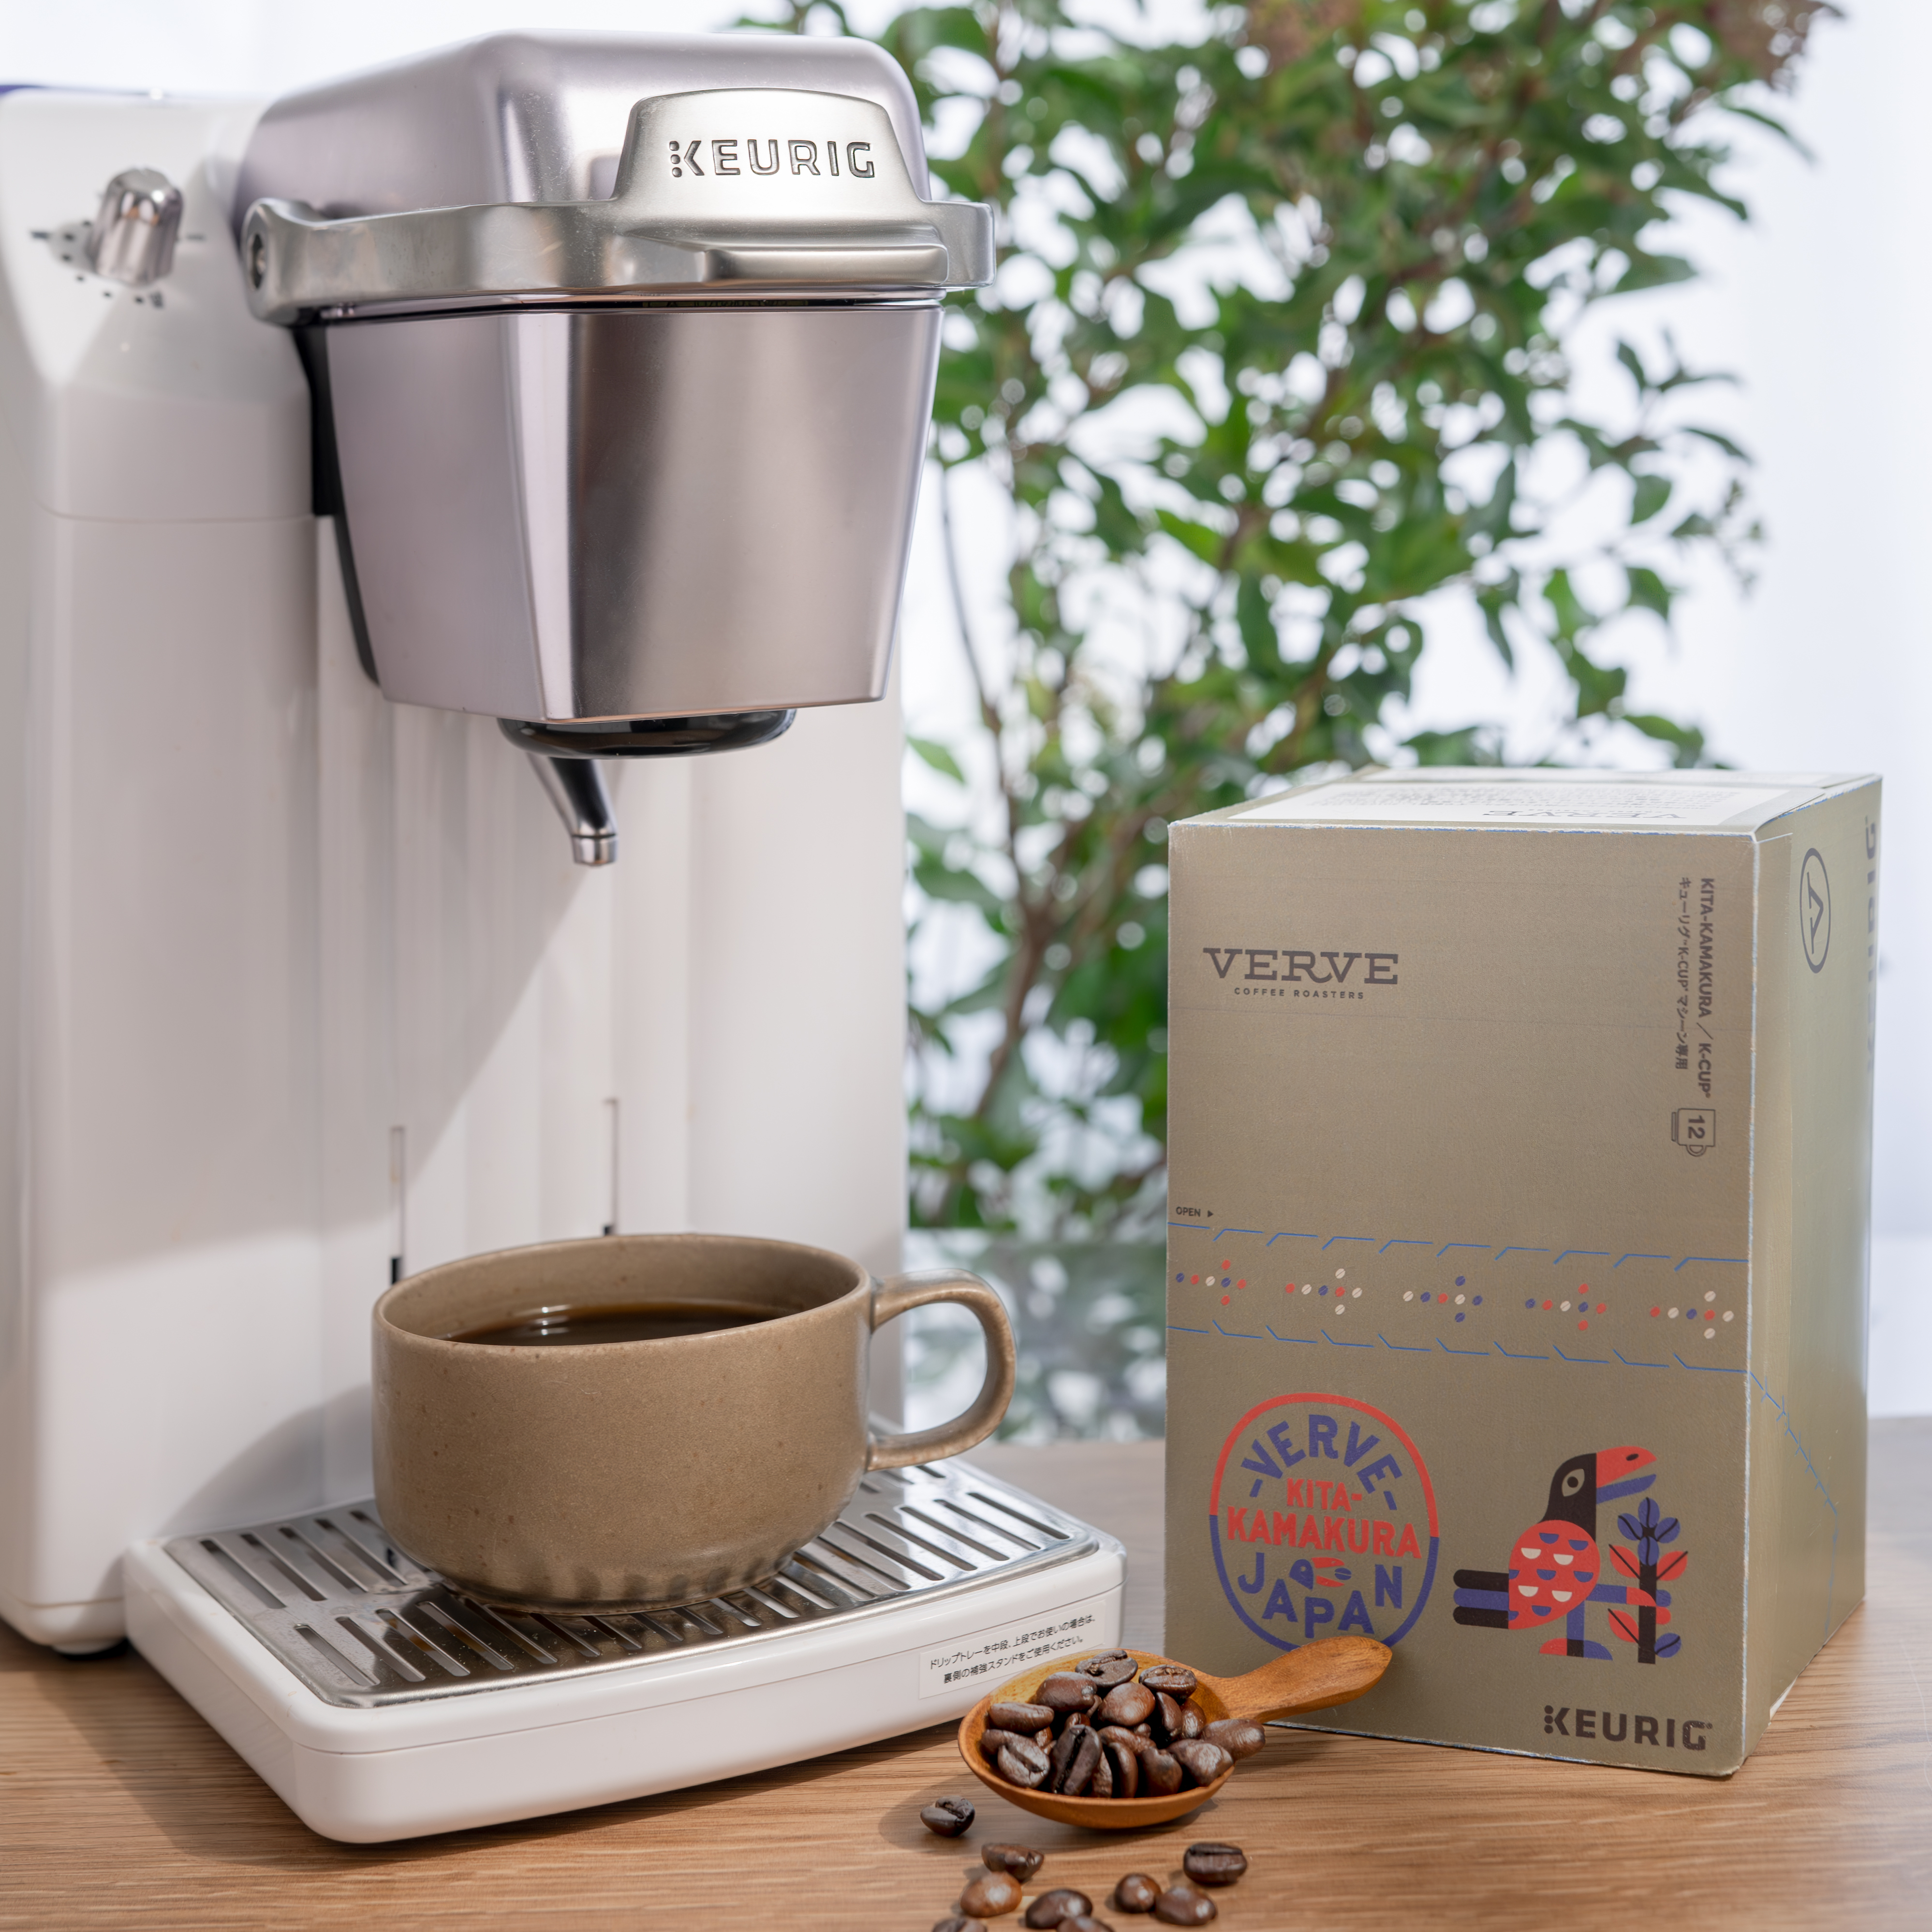 【新商品予告】カリフォルニア発のスペシャルティコーヒーブランド「VERVE COFFEE ROASTERS」から新商品が発売予定